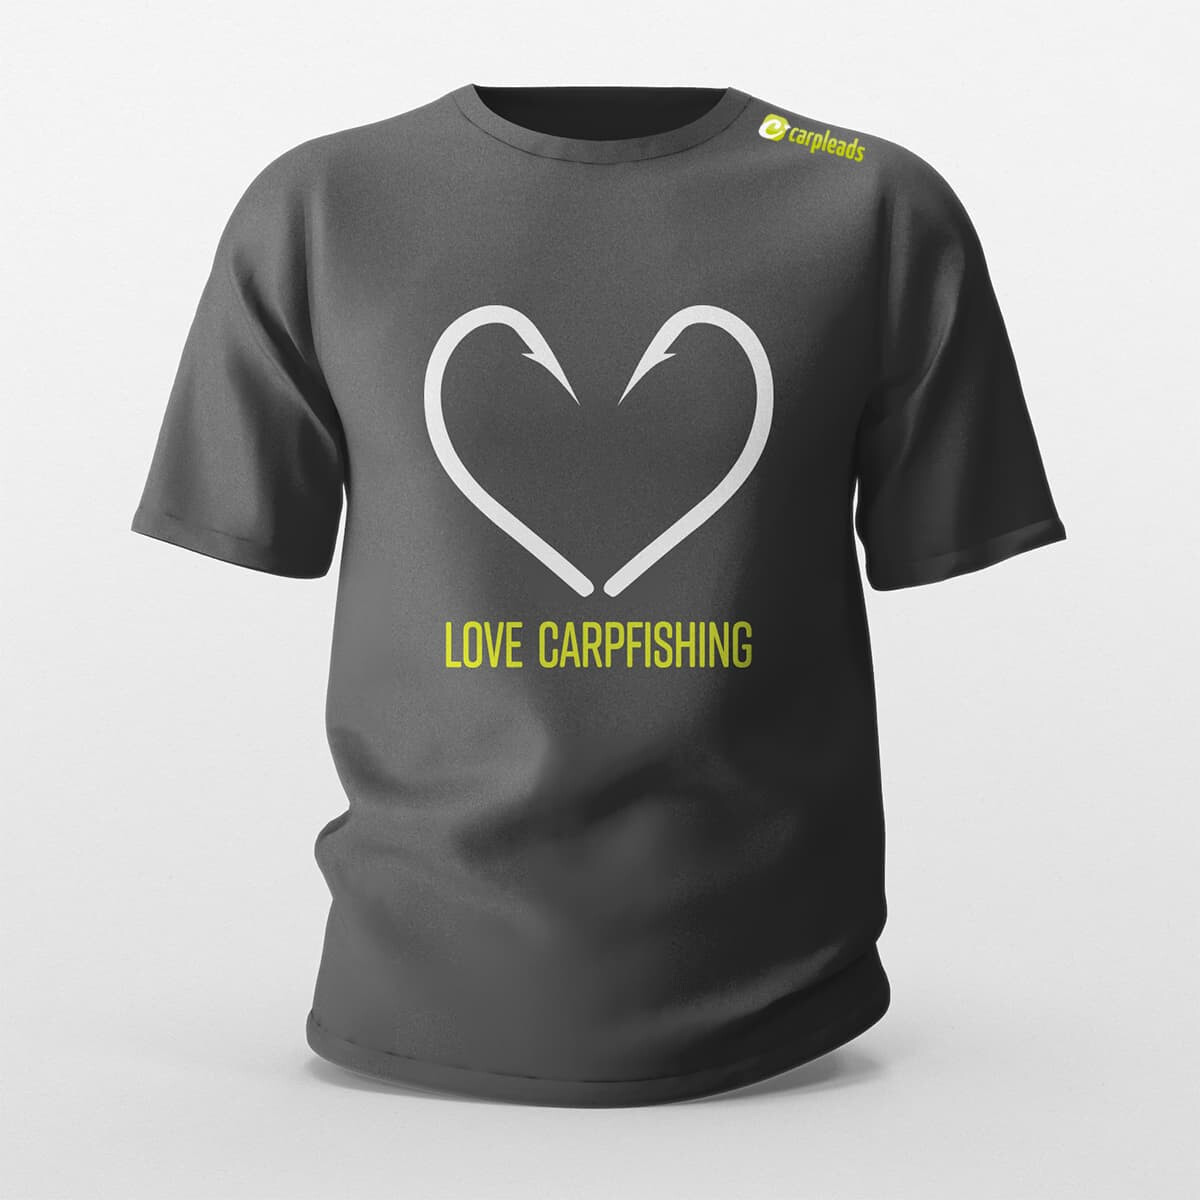 Carpleads "Love Carpfishing" T-Shirt 2024 - 2XL